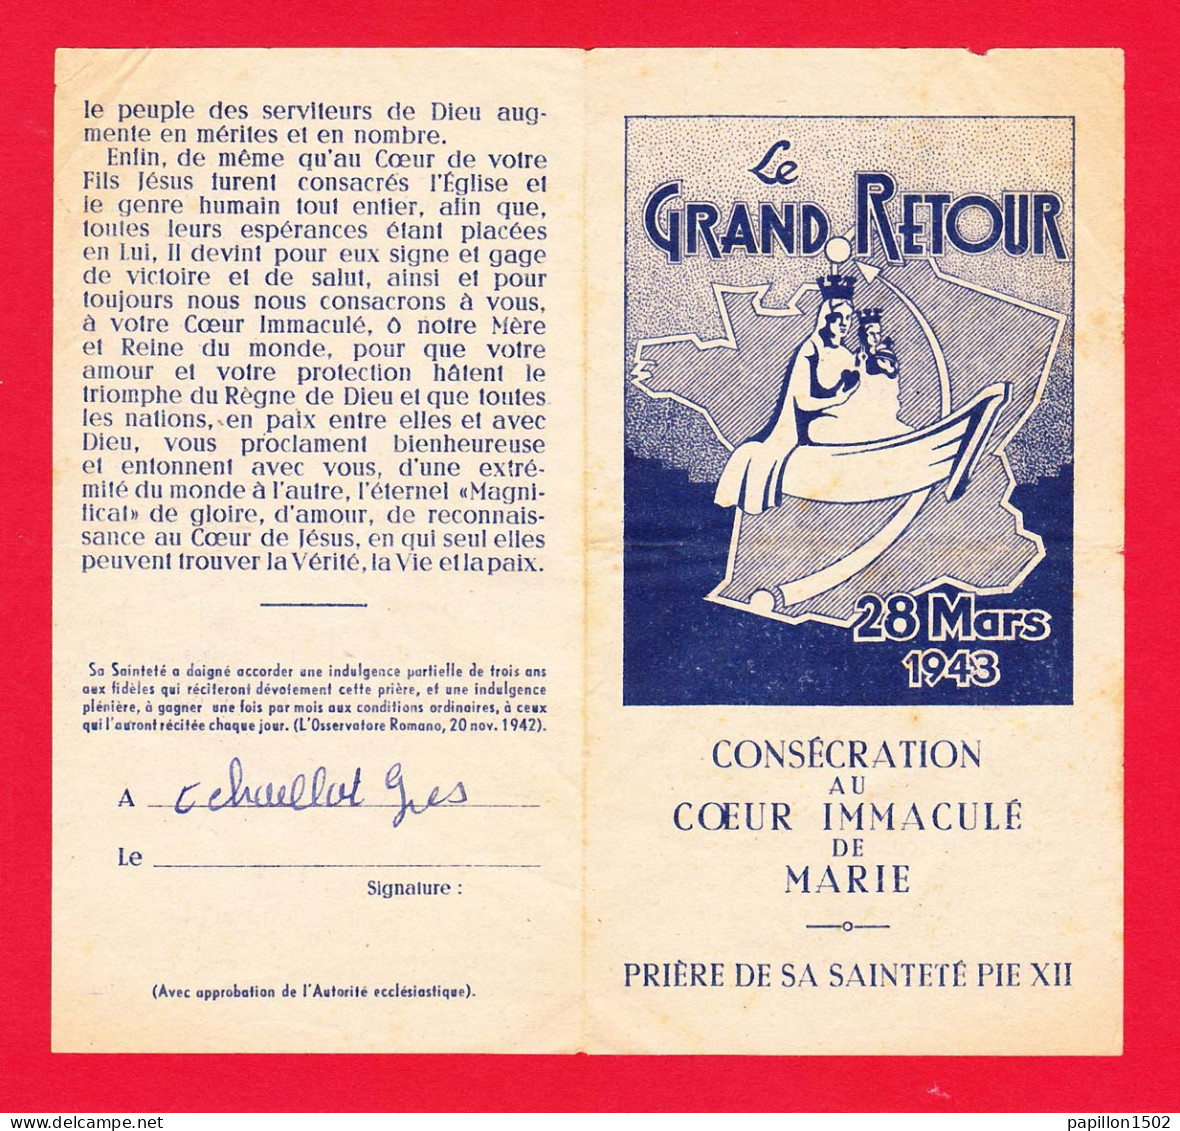 Religion-34P6 Le Grand Retour, 28 Mars 1943, Prière De Sa Sainteté PIE XII - Popes